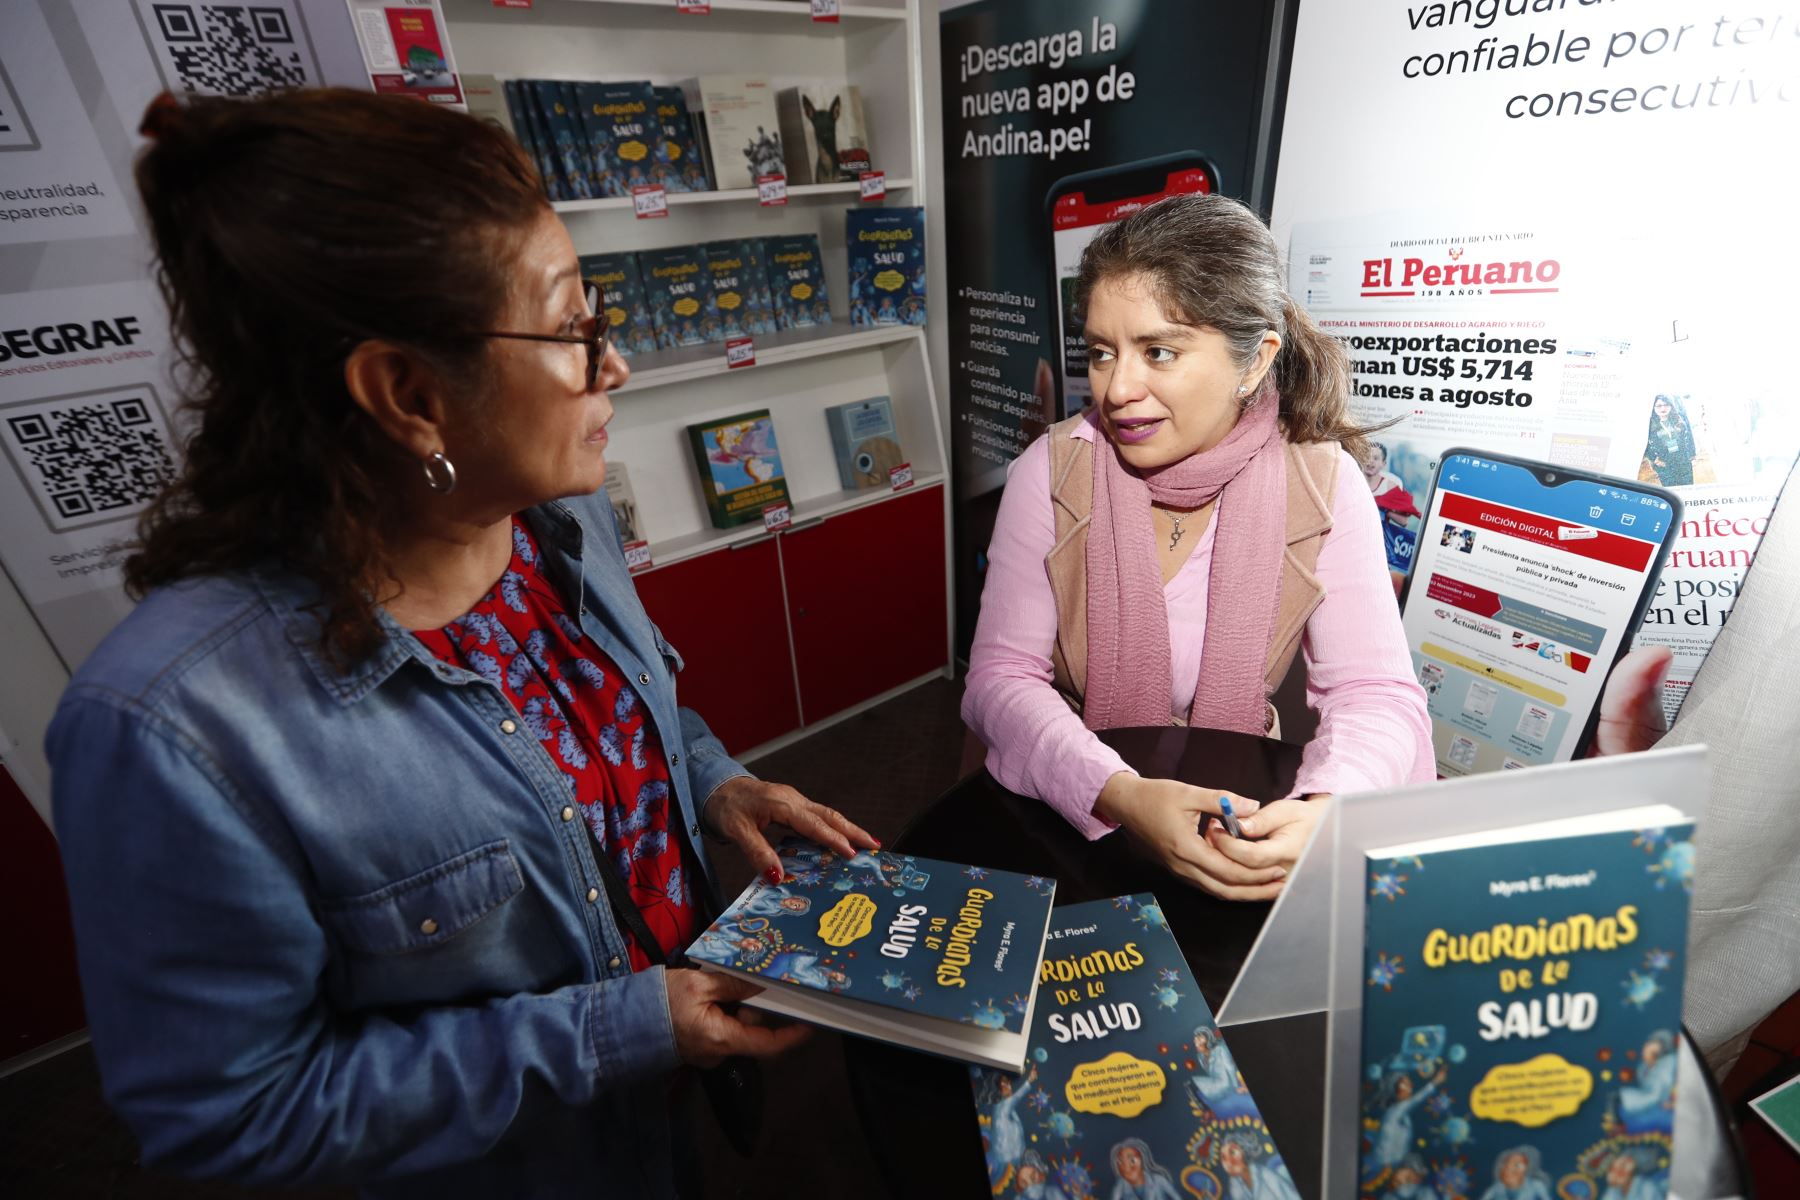 Myra Flores, autora del libro "Guardianas de la Salud", publicado por el fondo editorial de Editora Perú, estuvo firmando algunos ejemplares al público lector presente en la Feria del Libro Ricardo Palma de Miraflores. Foto: ANDINA/Daniel Bracamonte